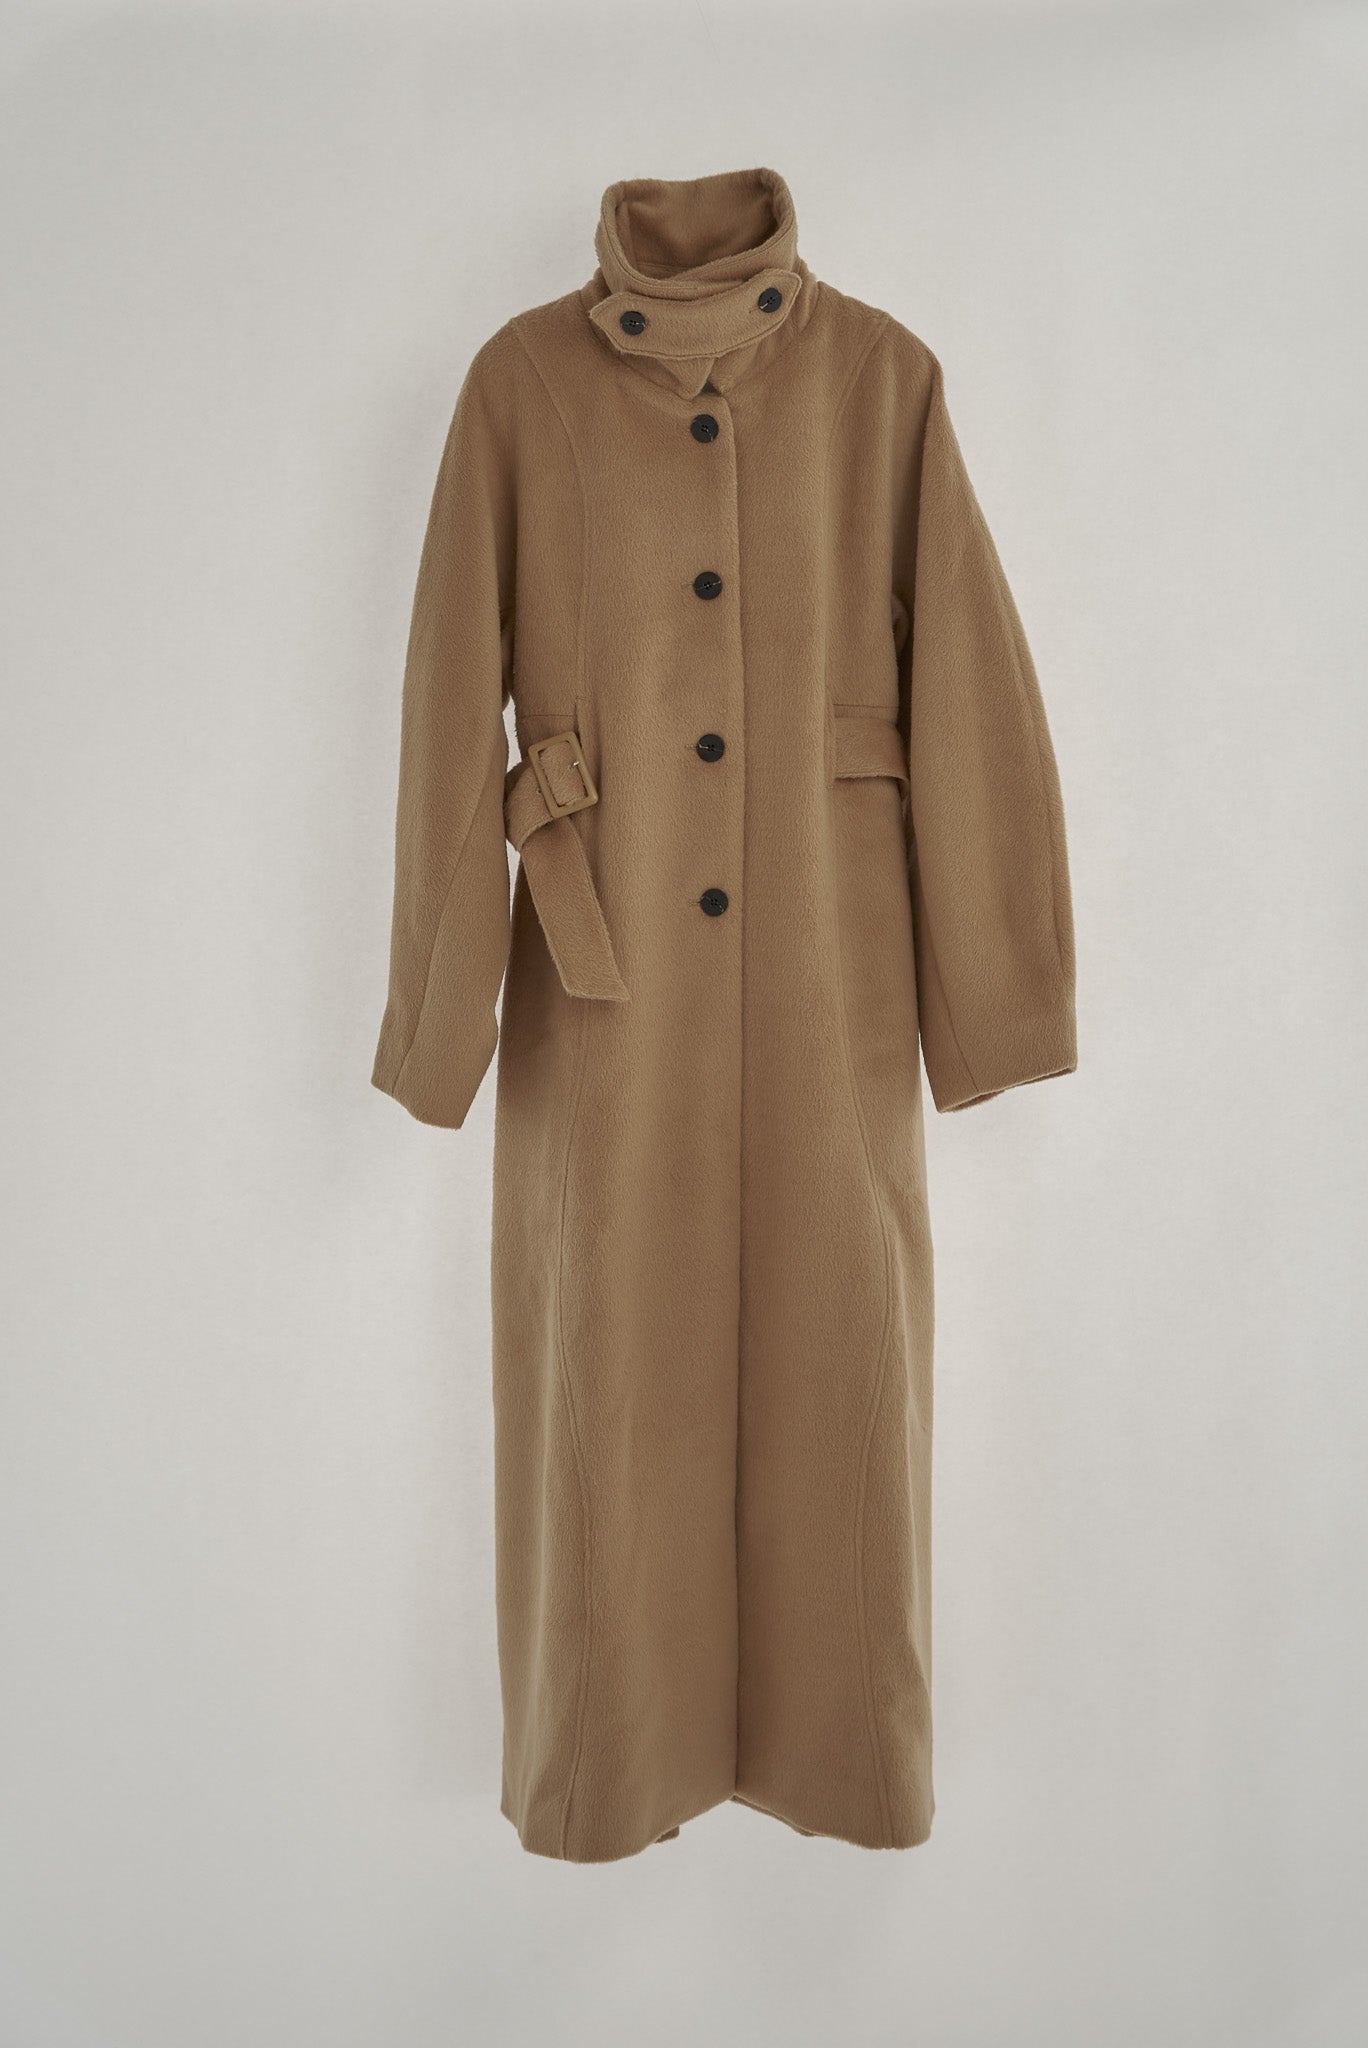 身幅516cmEaphi wave design shaggy long coat